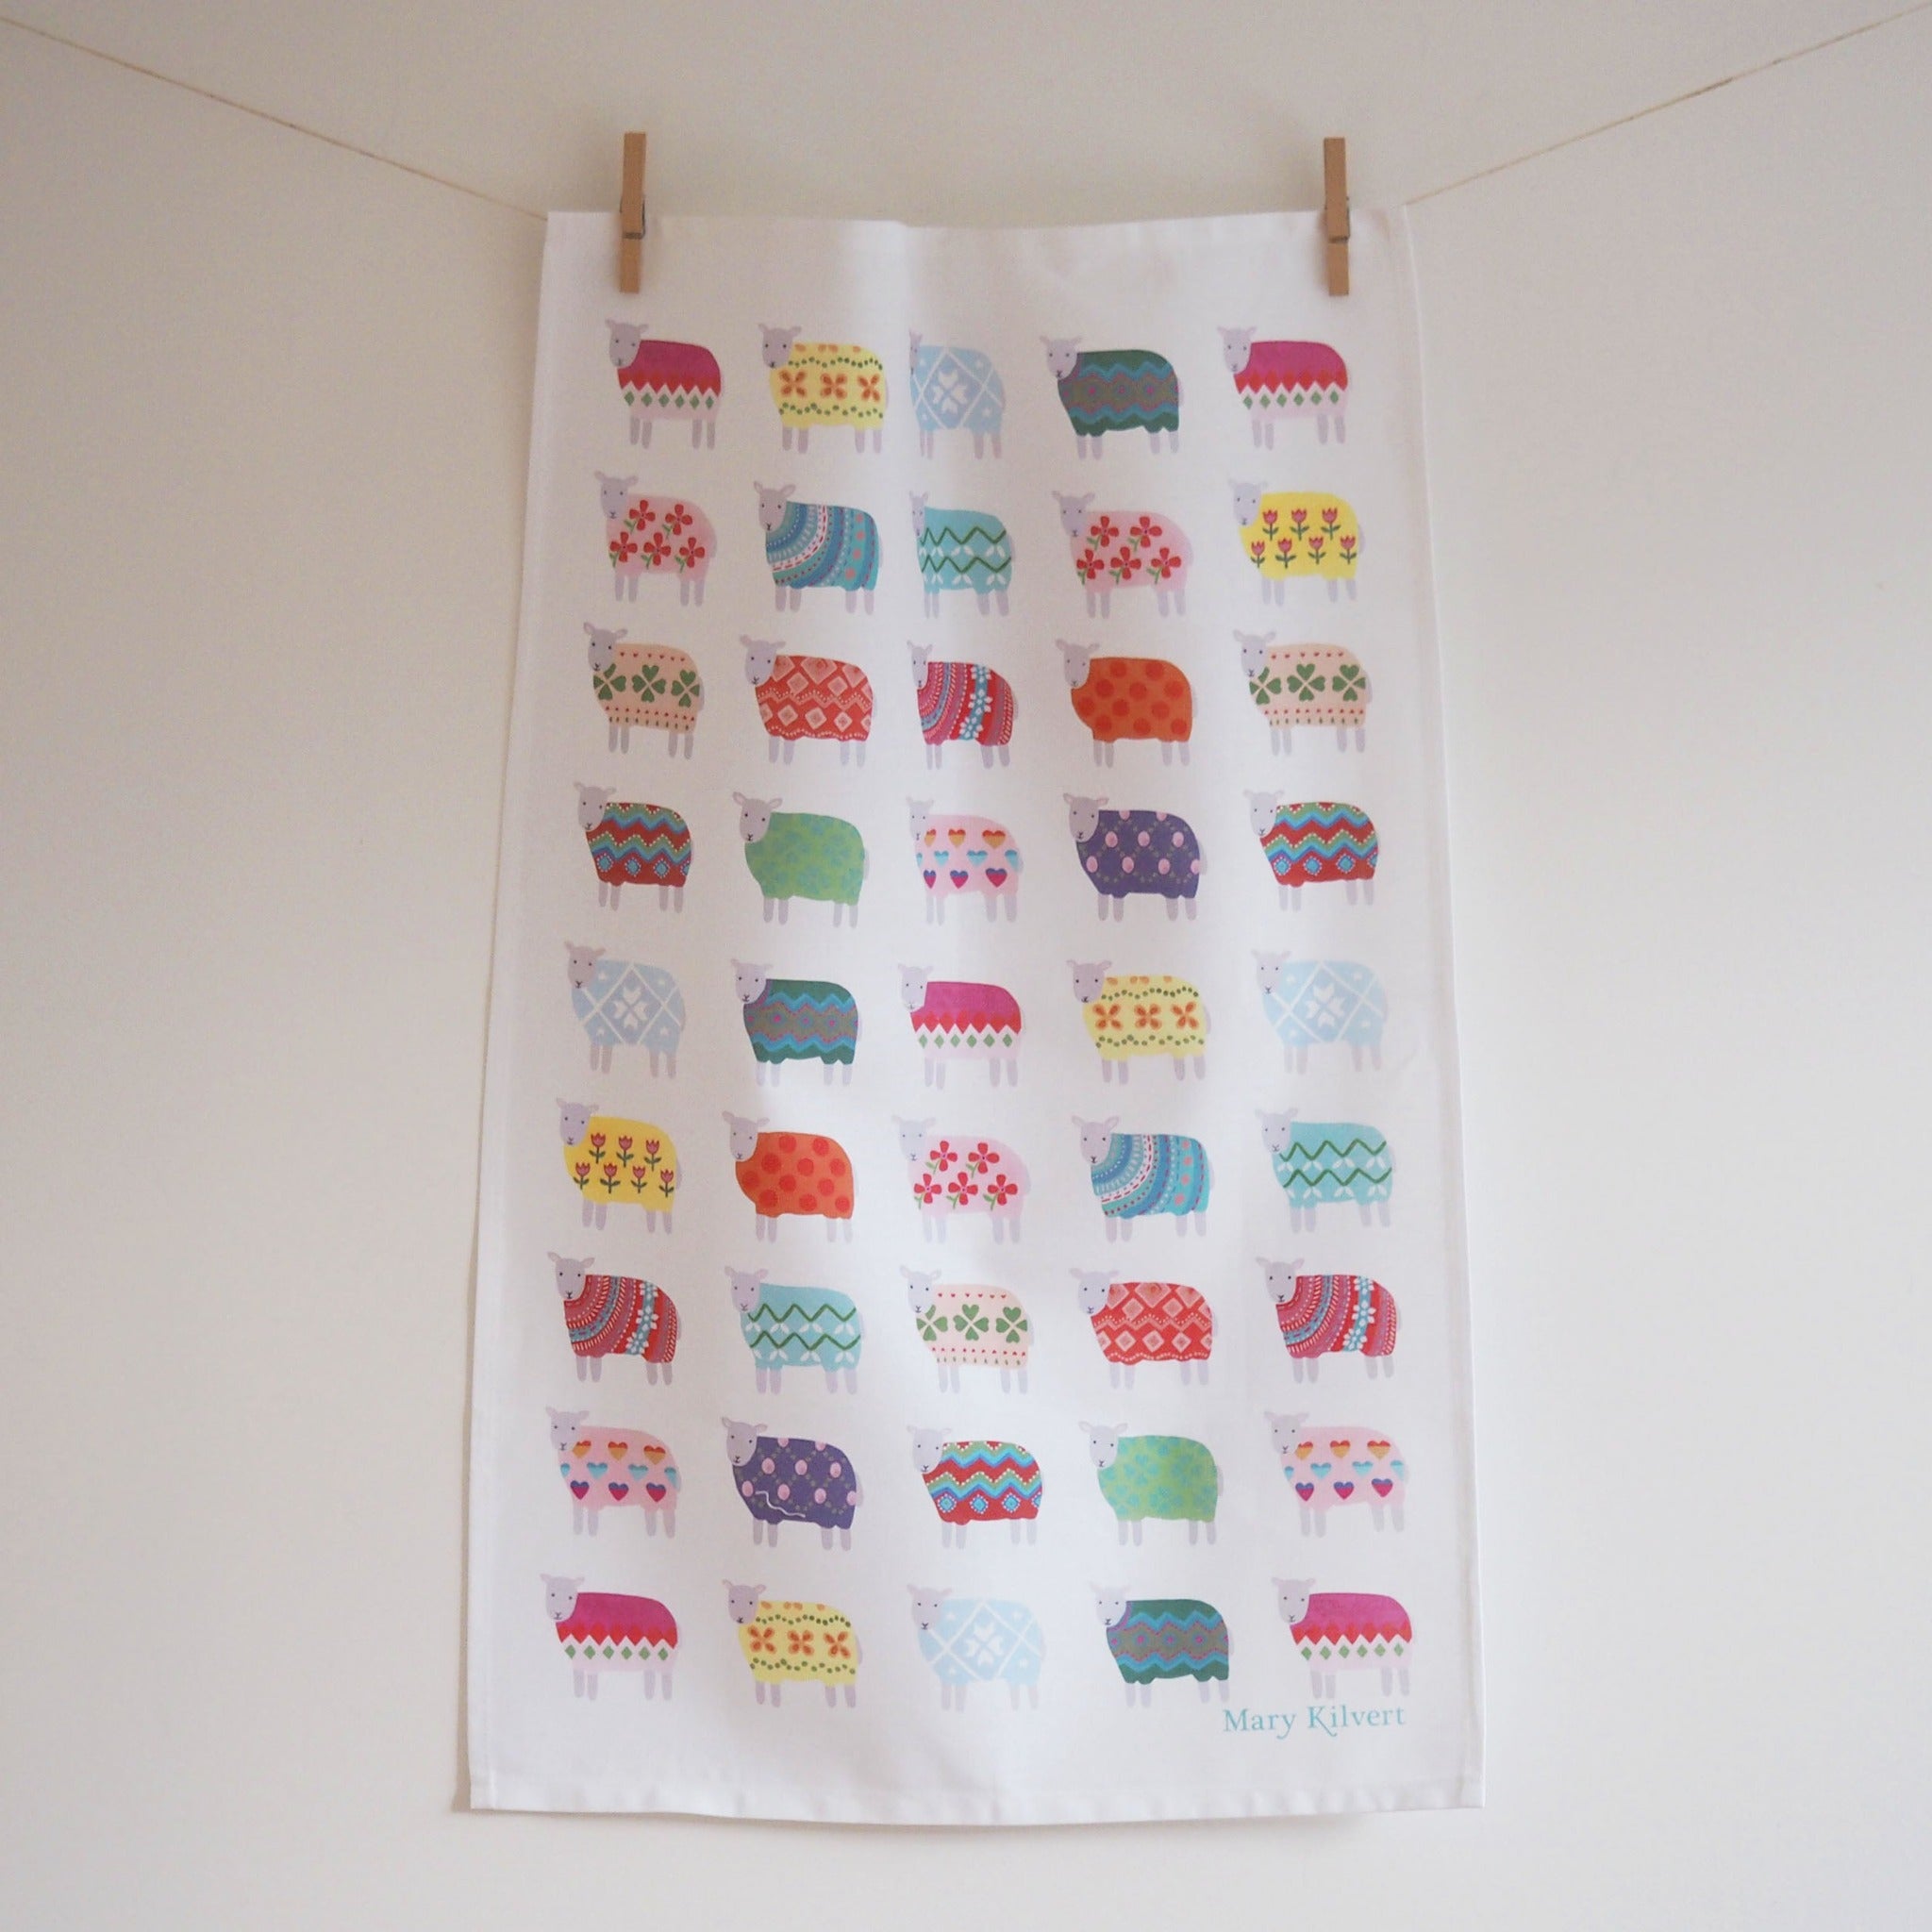 Sheep Pattern Tea Towel by Mary Kilvert